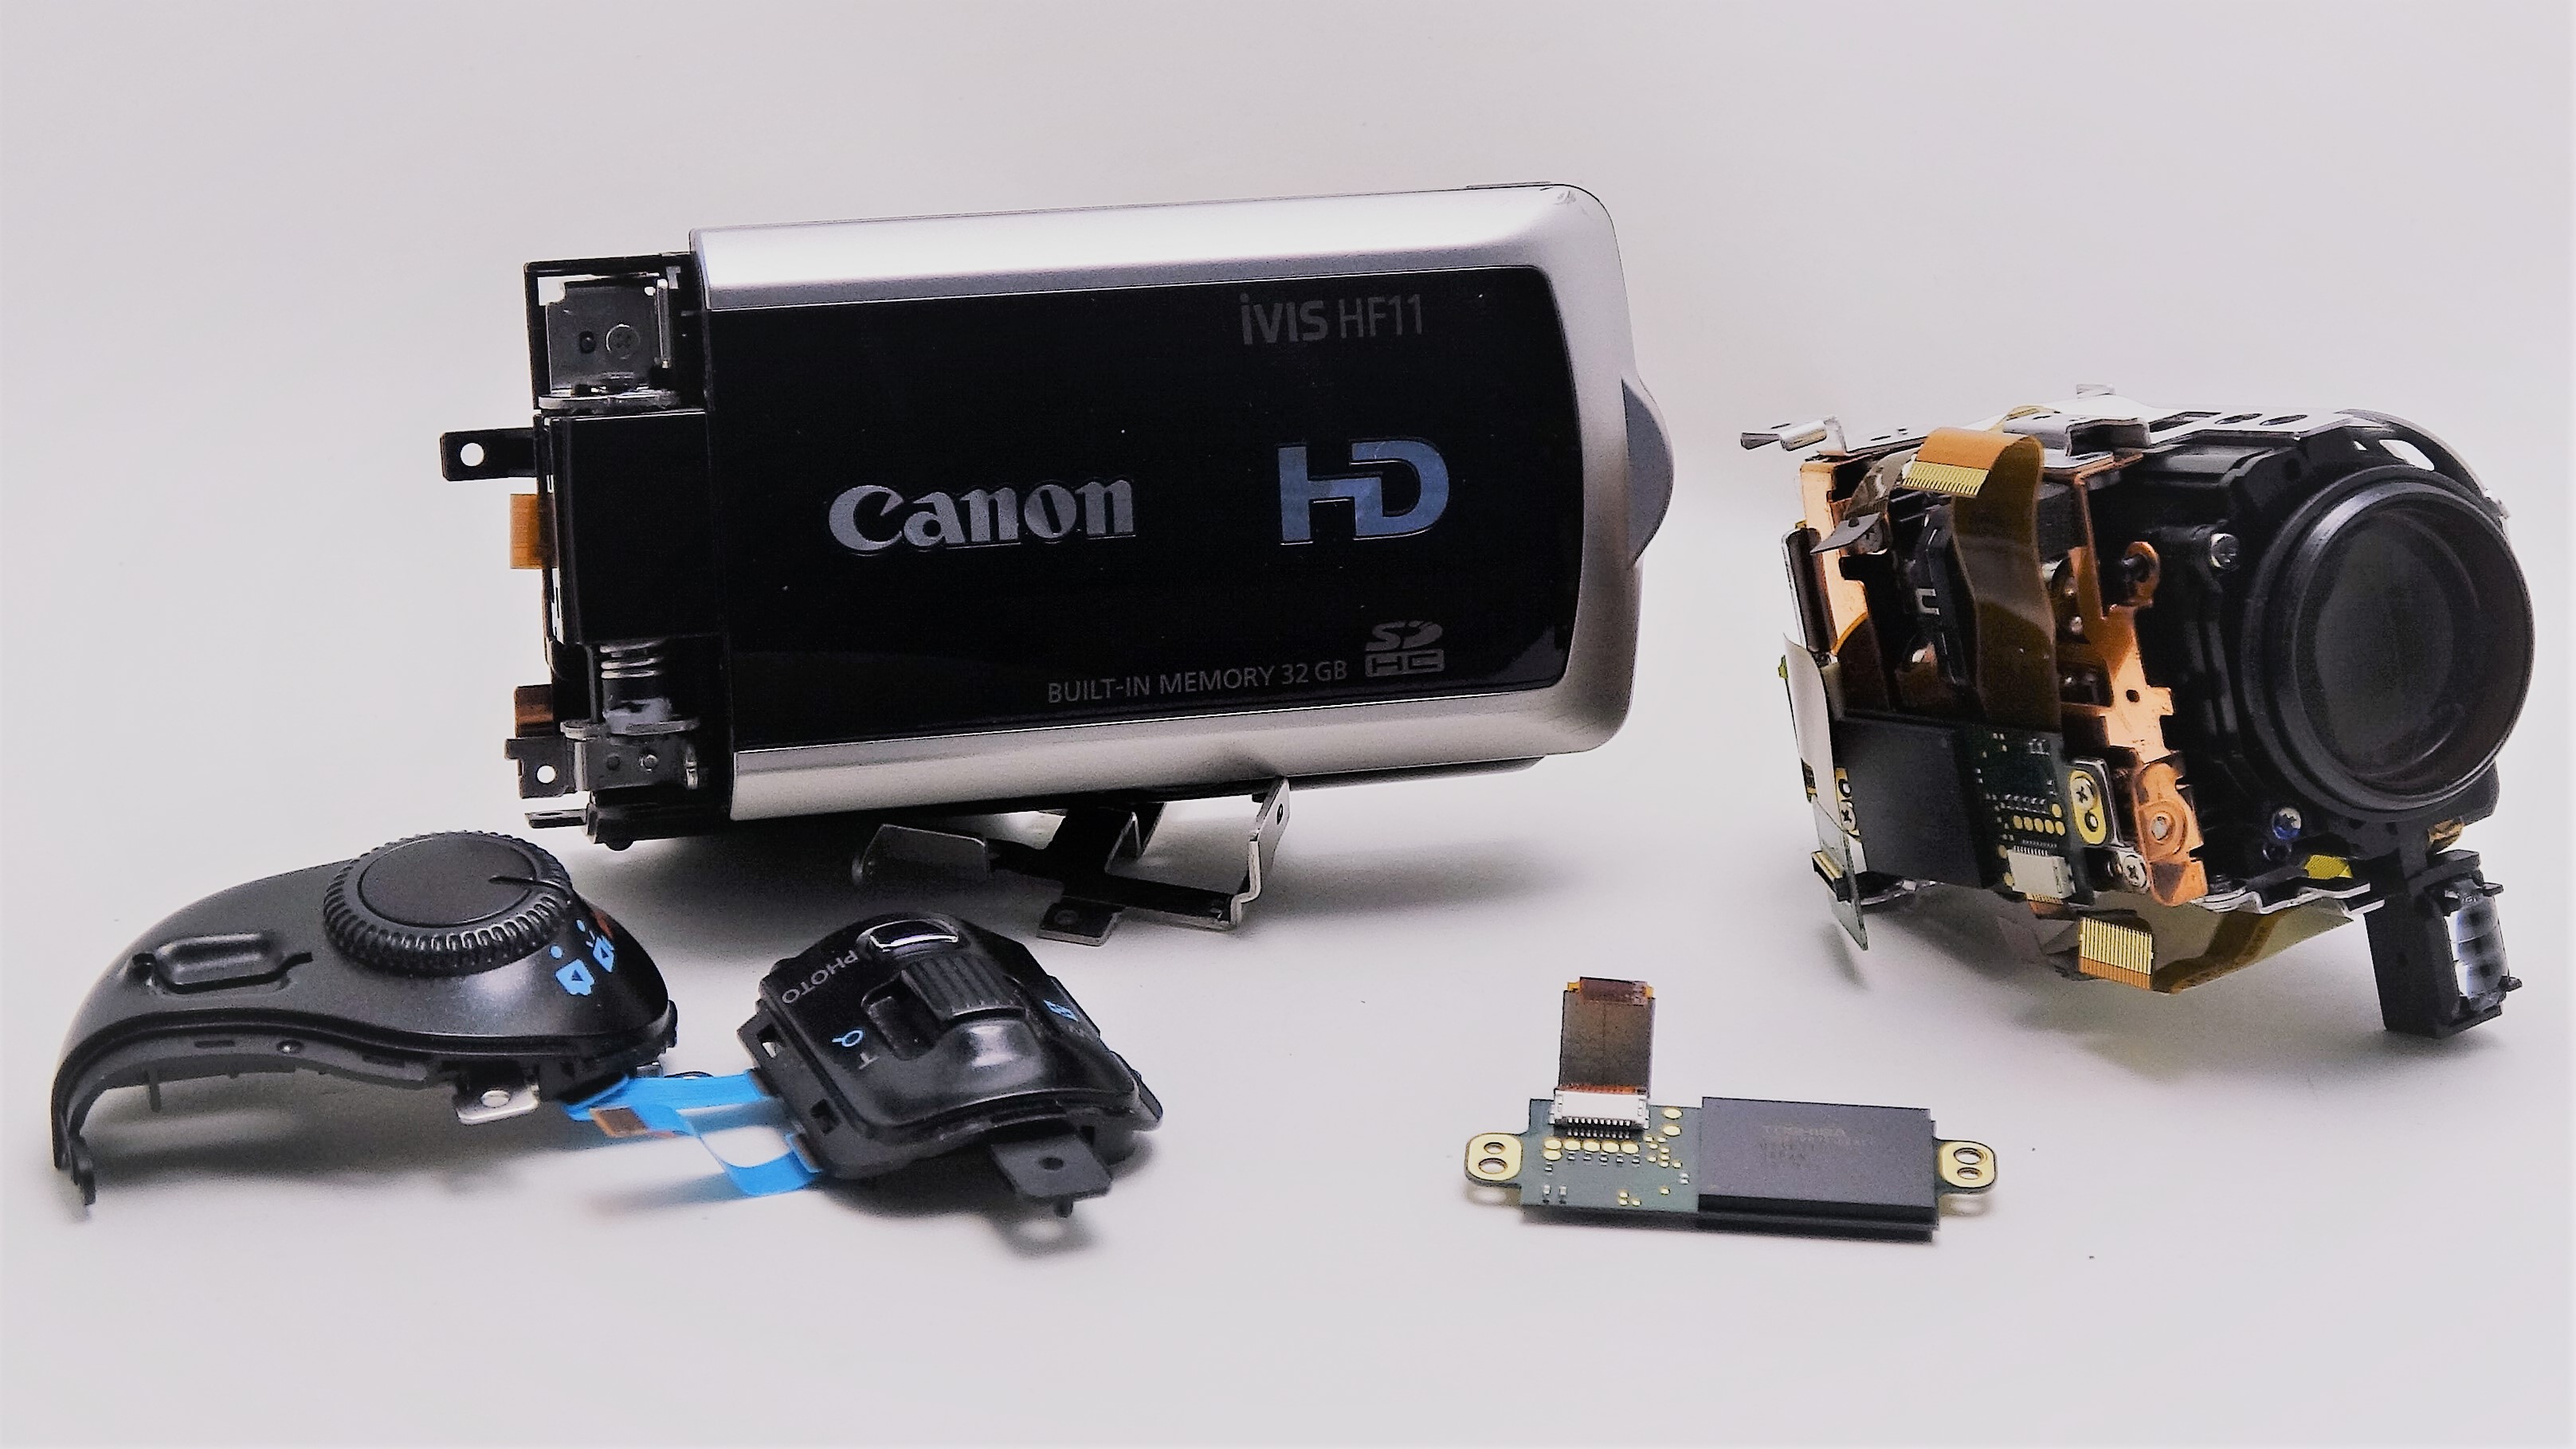 HF11-Canon-ivis-電源が入らないビデオカメラからデータ取り出し